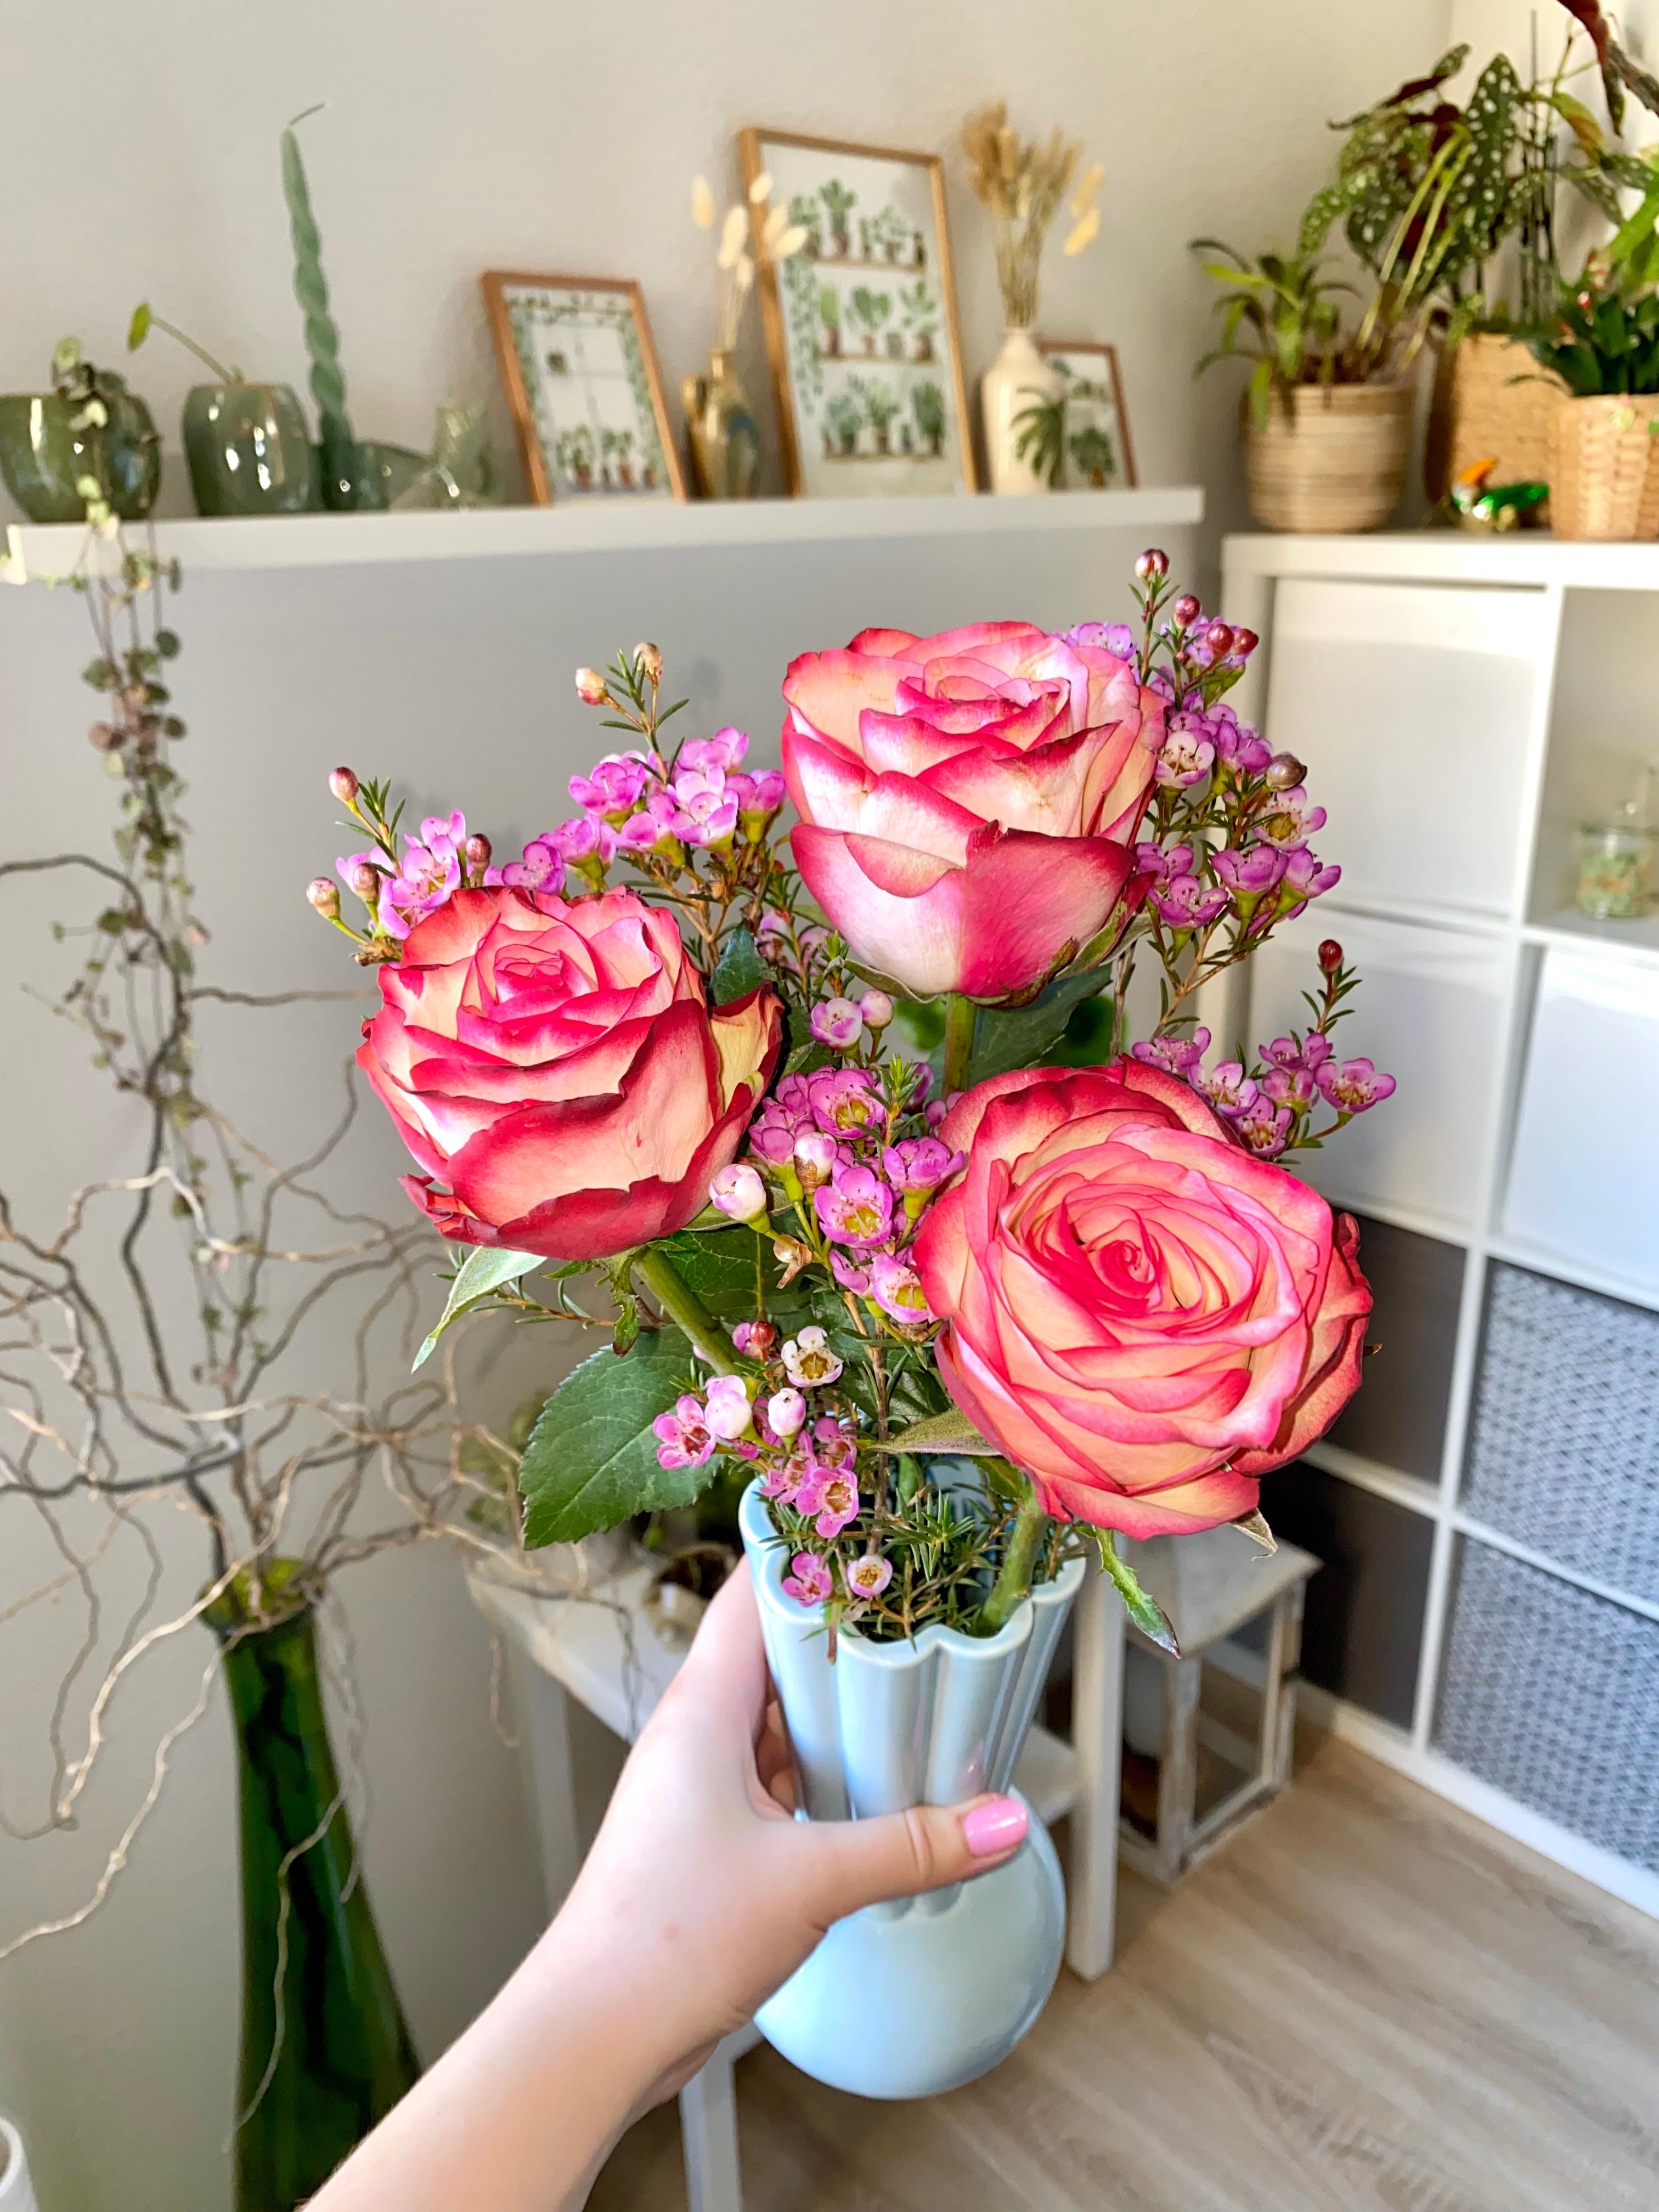 Diese Schönheiten gabs zum Valentinstag 
#rosen #blumen #freshflowers #blumenstrauß #vase #rose